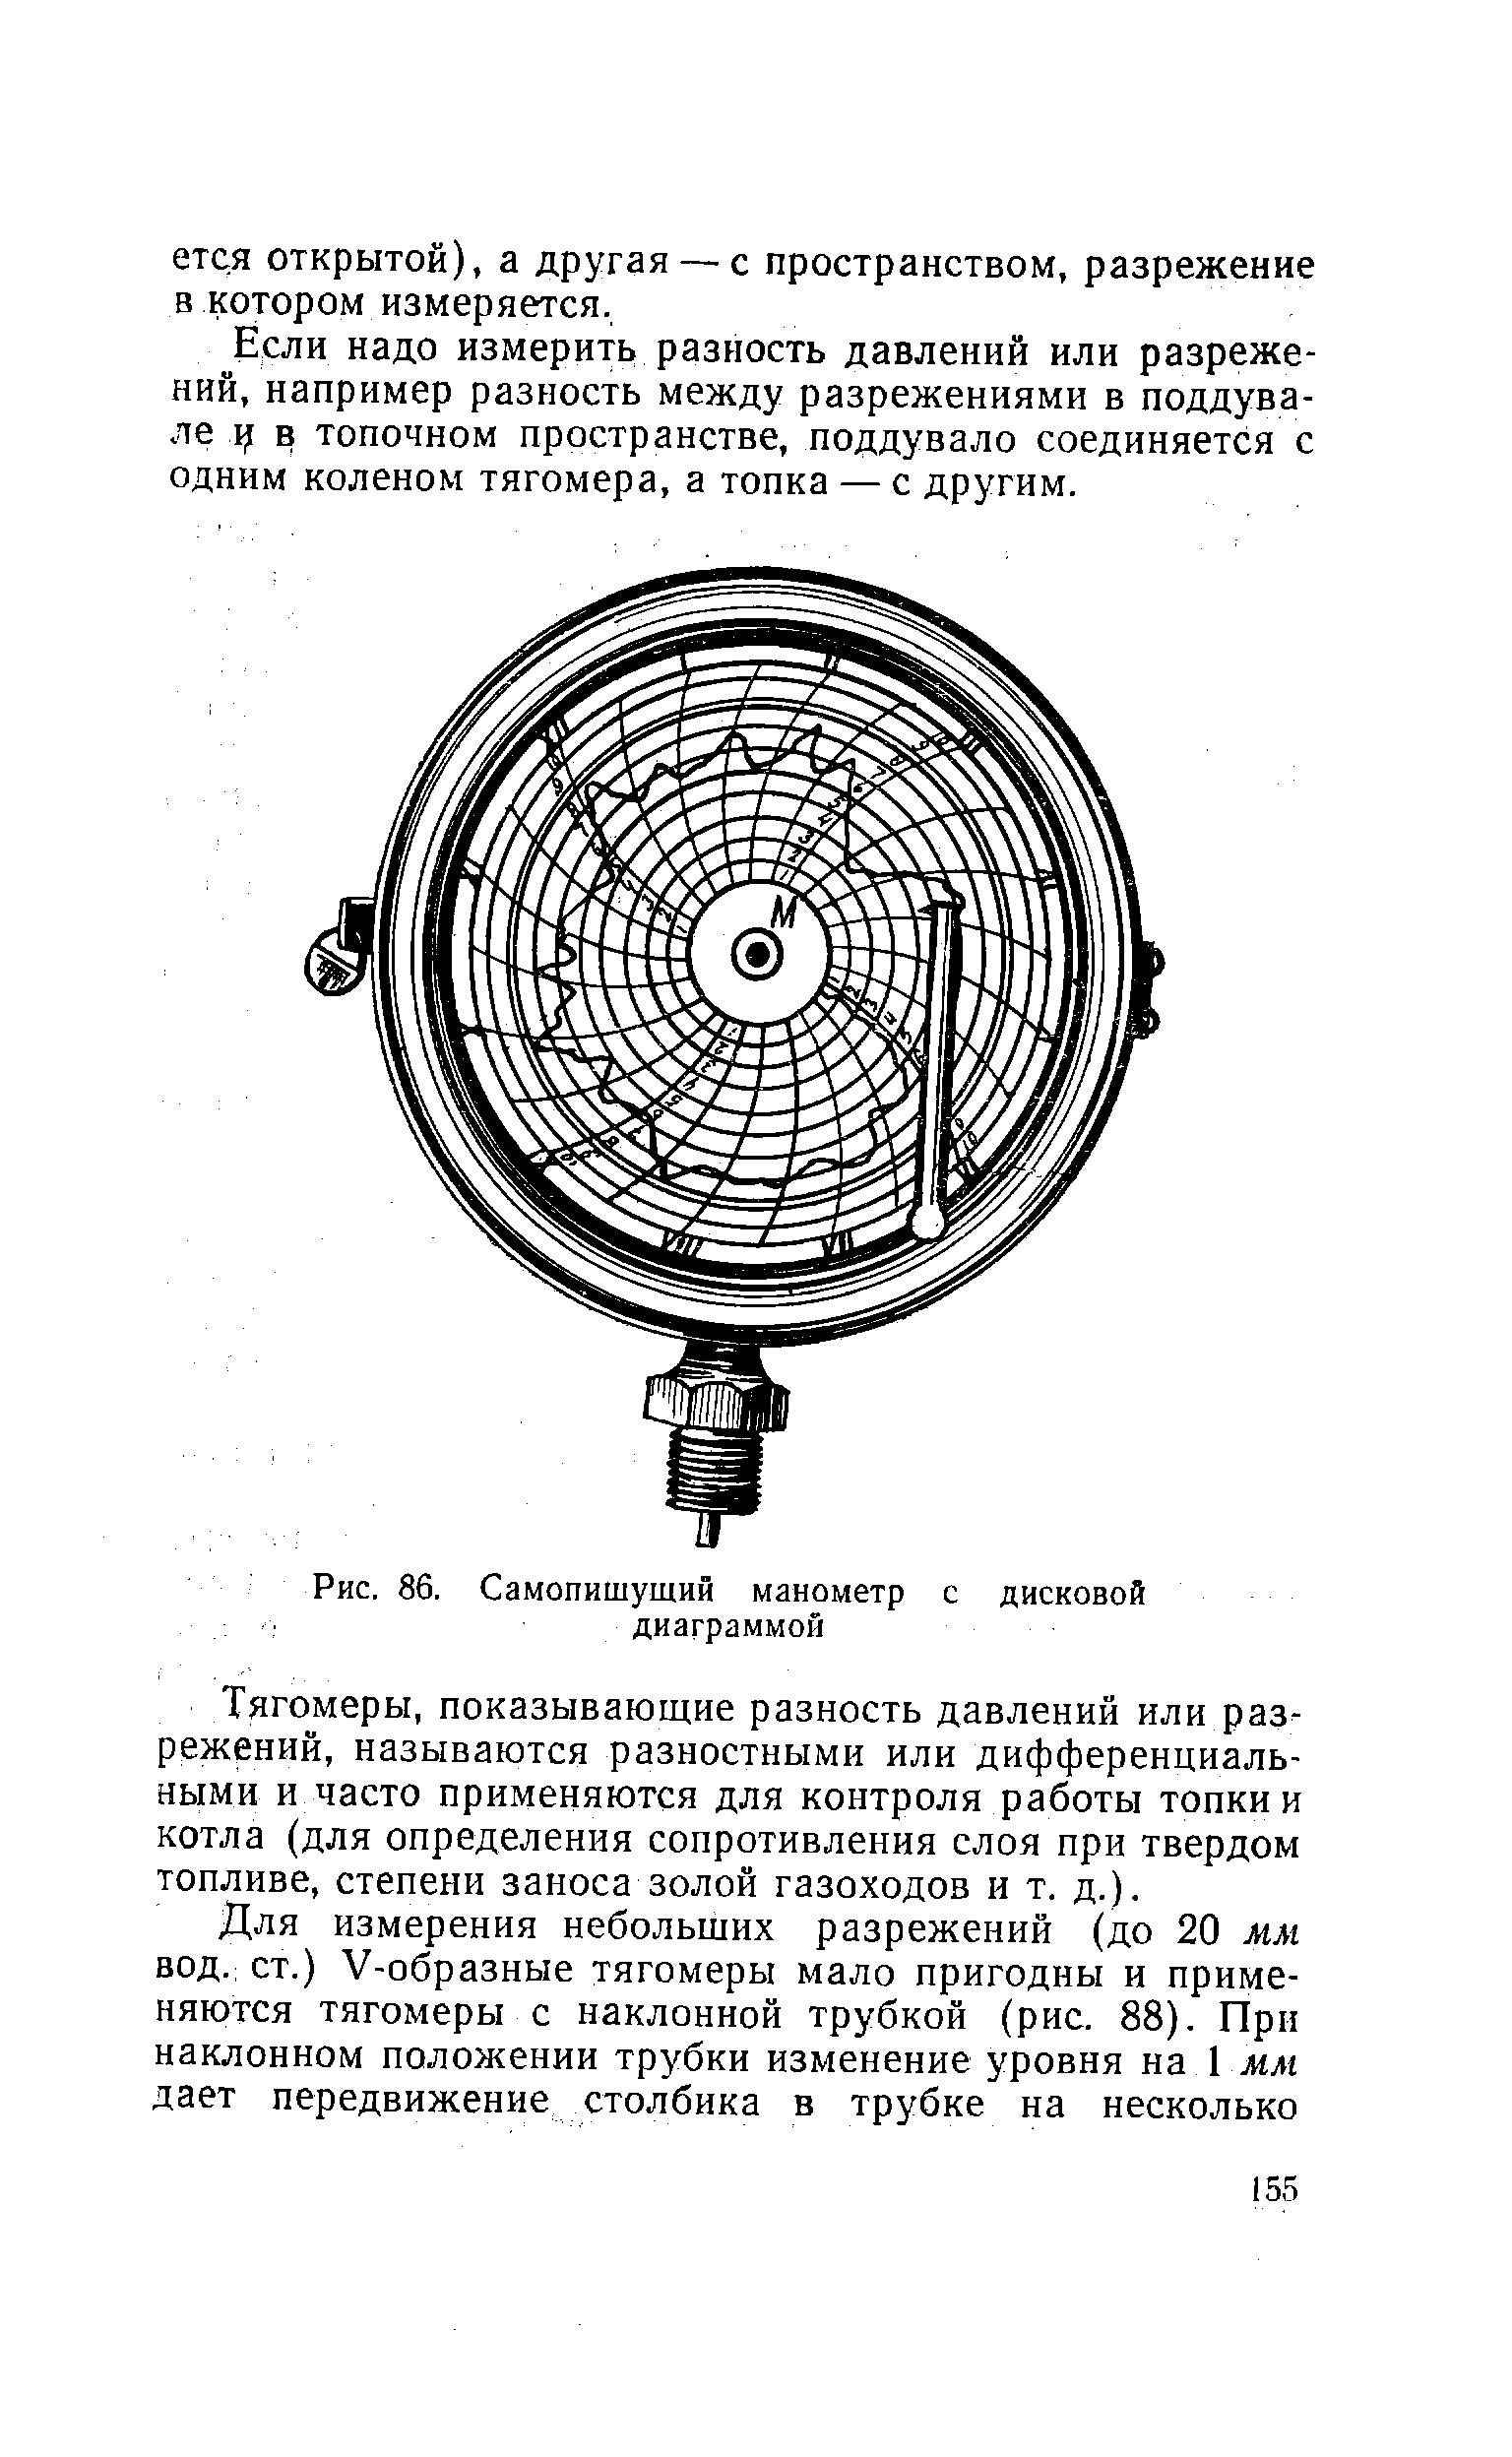 Рис. 86. Самопишущий манометр с дисковой диаграммой
